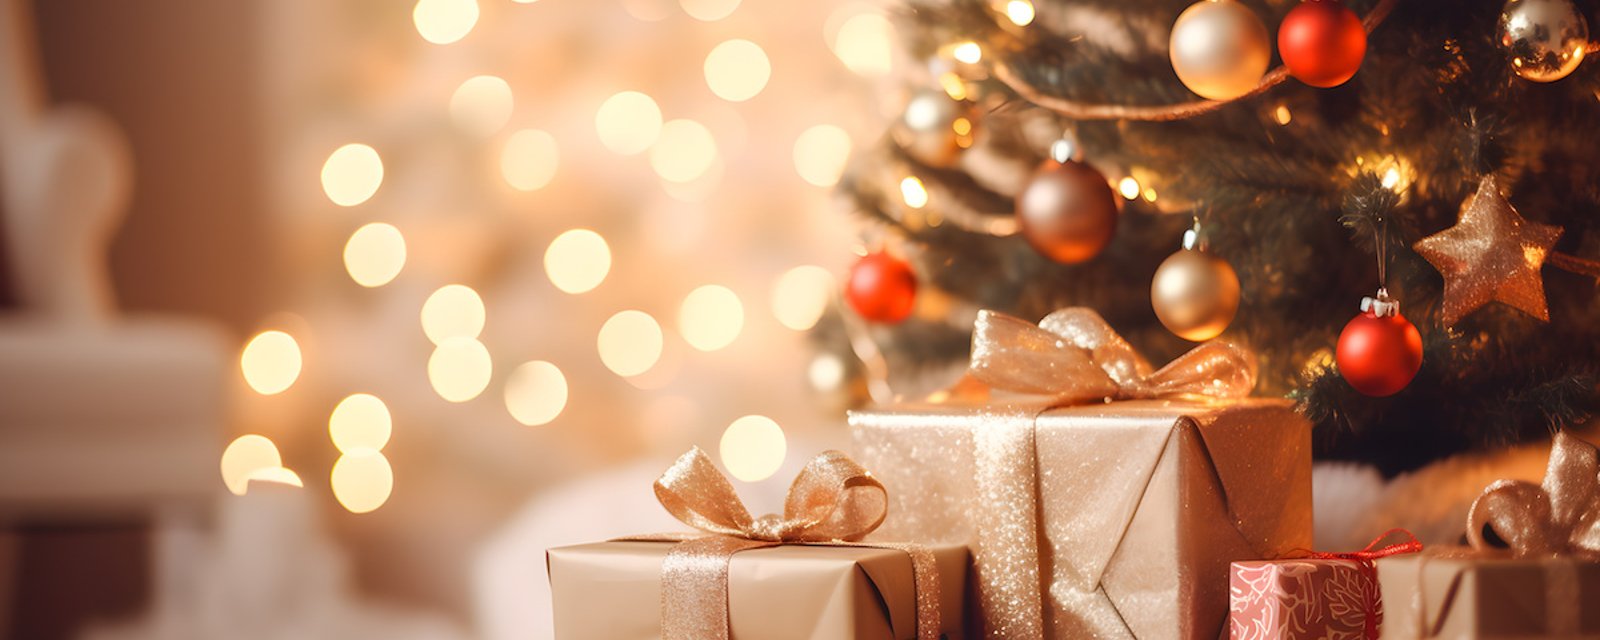 7 cadeaux de Noël qui peuvent être dangereux  pour les enfants